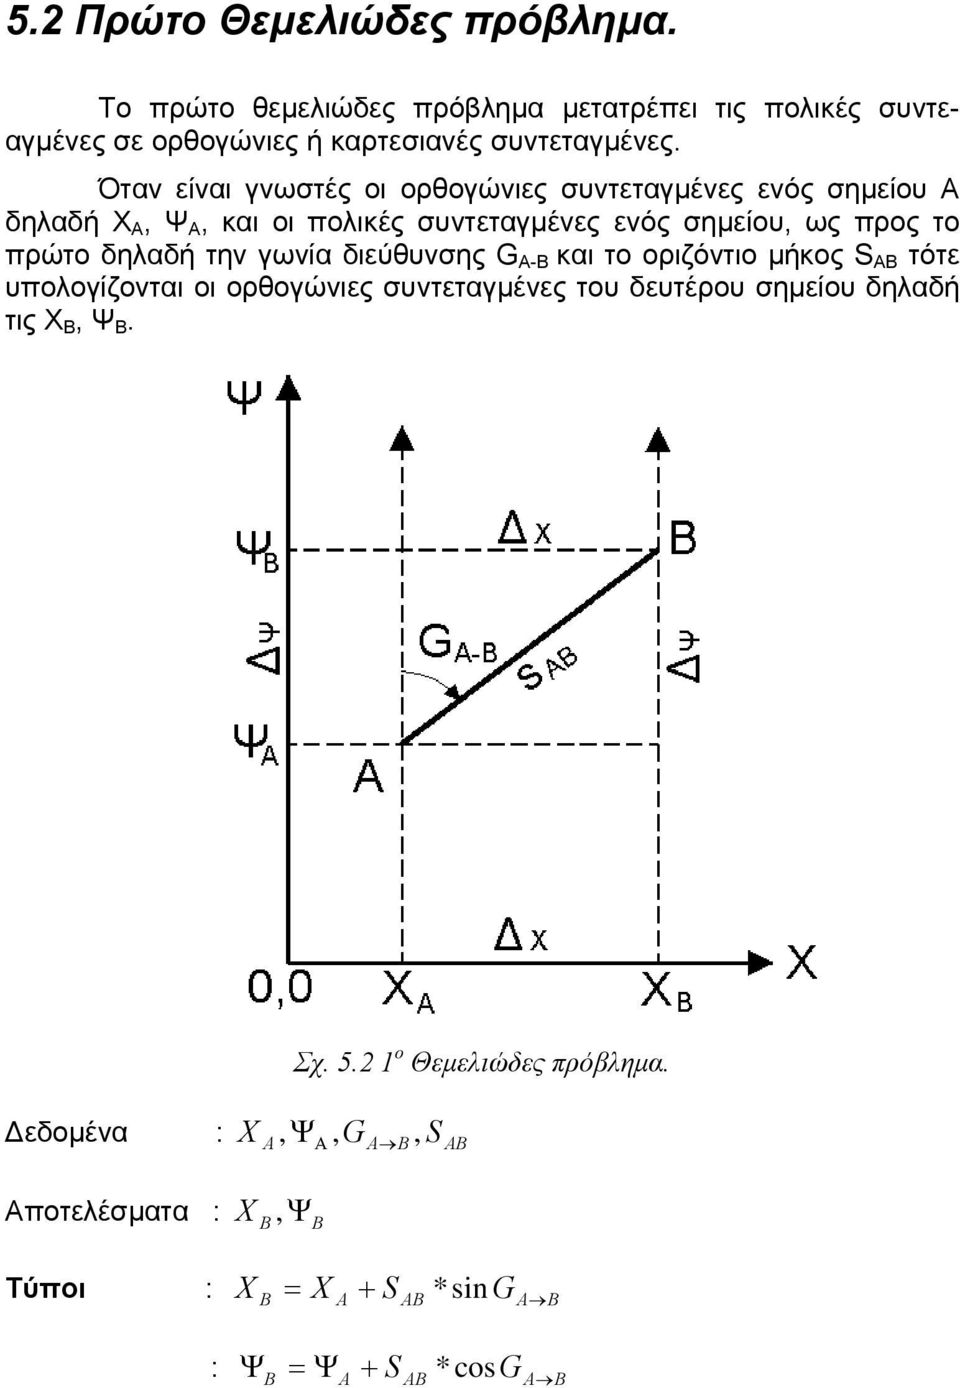 Όταν είναι γνωστές οι ορθογώνιες συντεταγμένες ενός σημείου Α δηλαδή Χ Α, Ψ Α, και οι πολικές συντεταγμένες ενός σημείου, ως προς